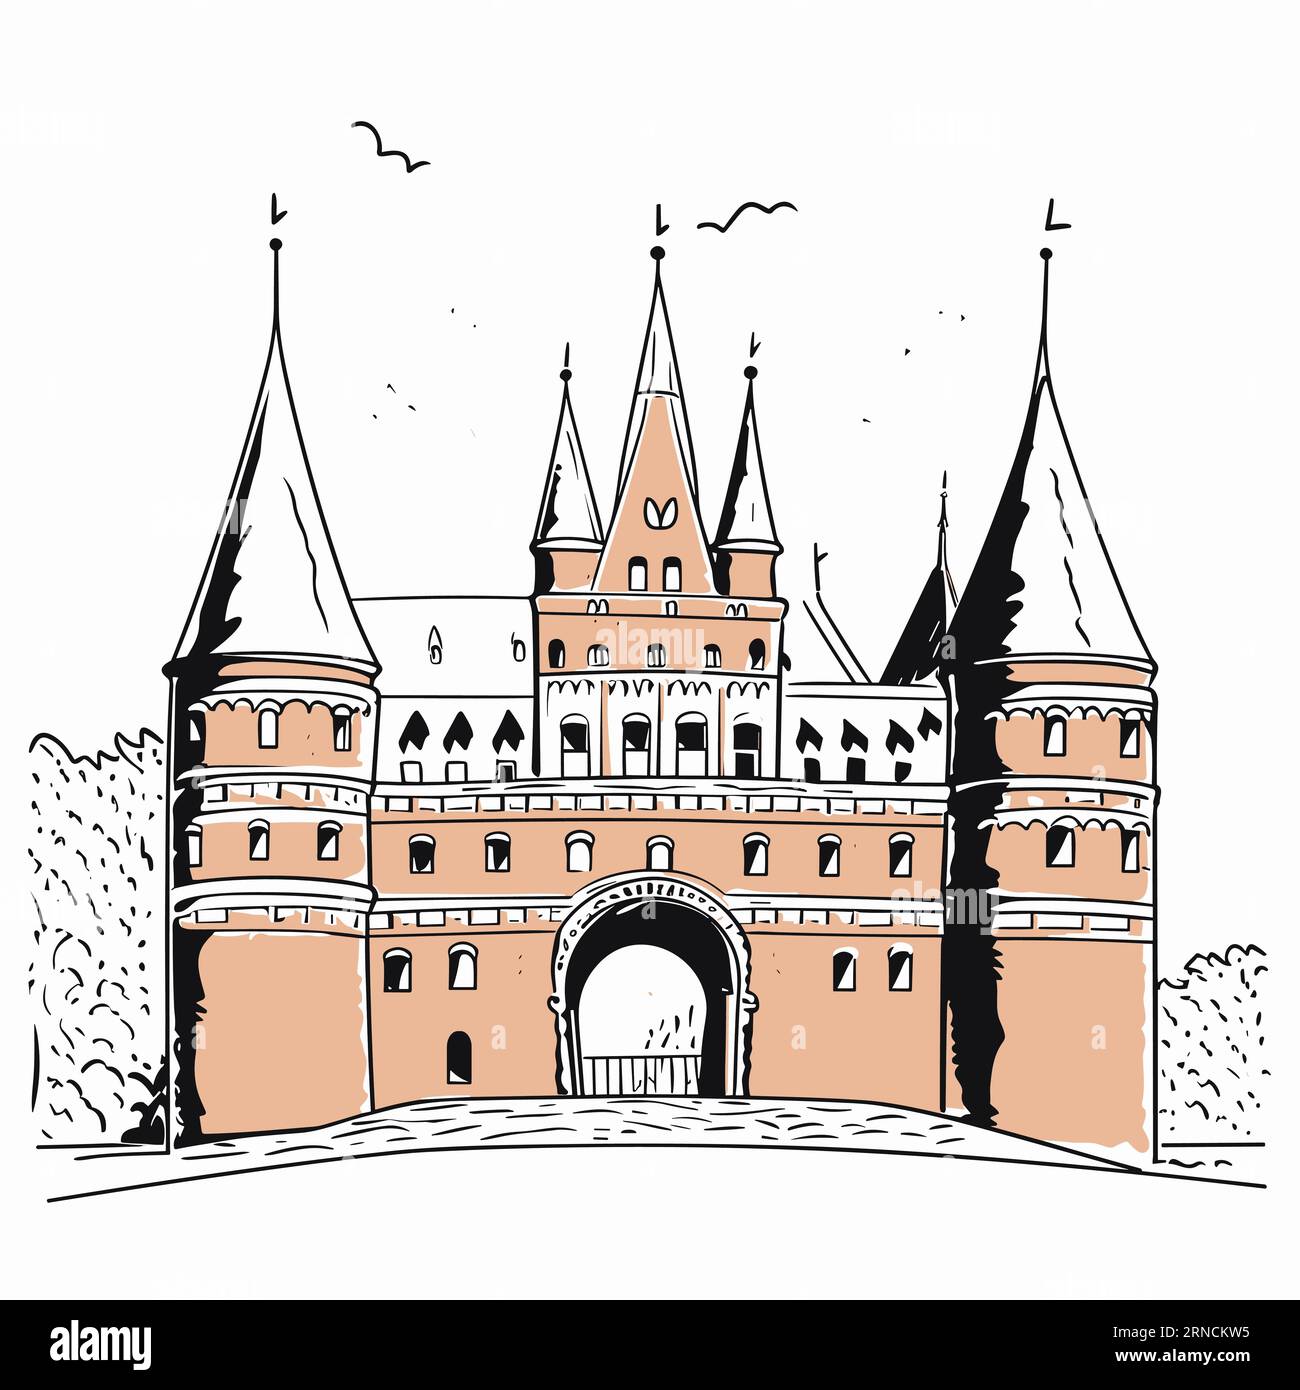 Eine Skizze eines alten Schlosses im Stil der niederländischen Tradition, ikonographische Symbolik, deutsche Romantik, bogenförmige Türen Stock Vektor